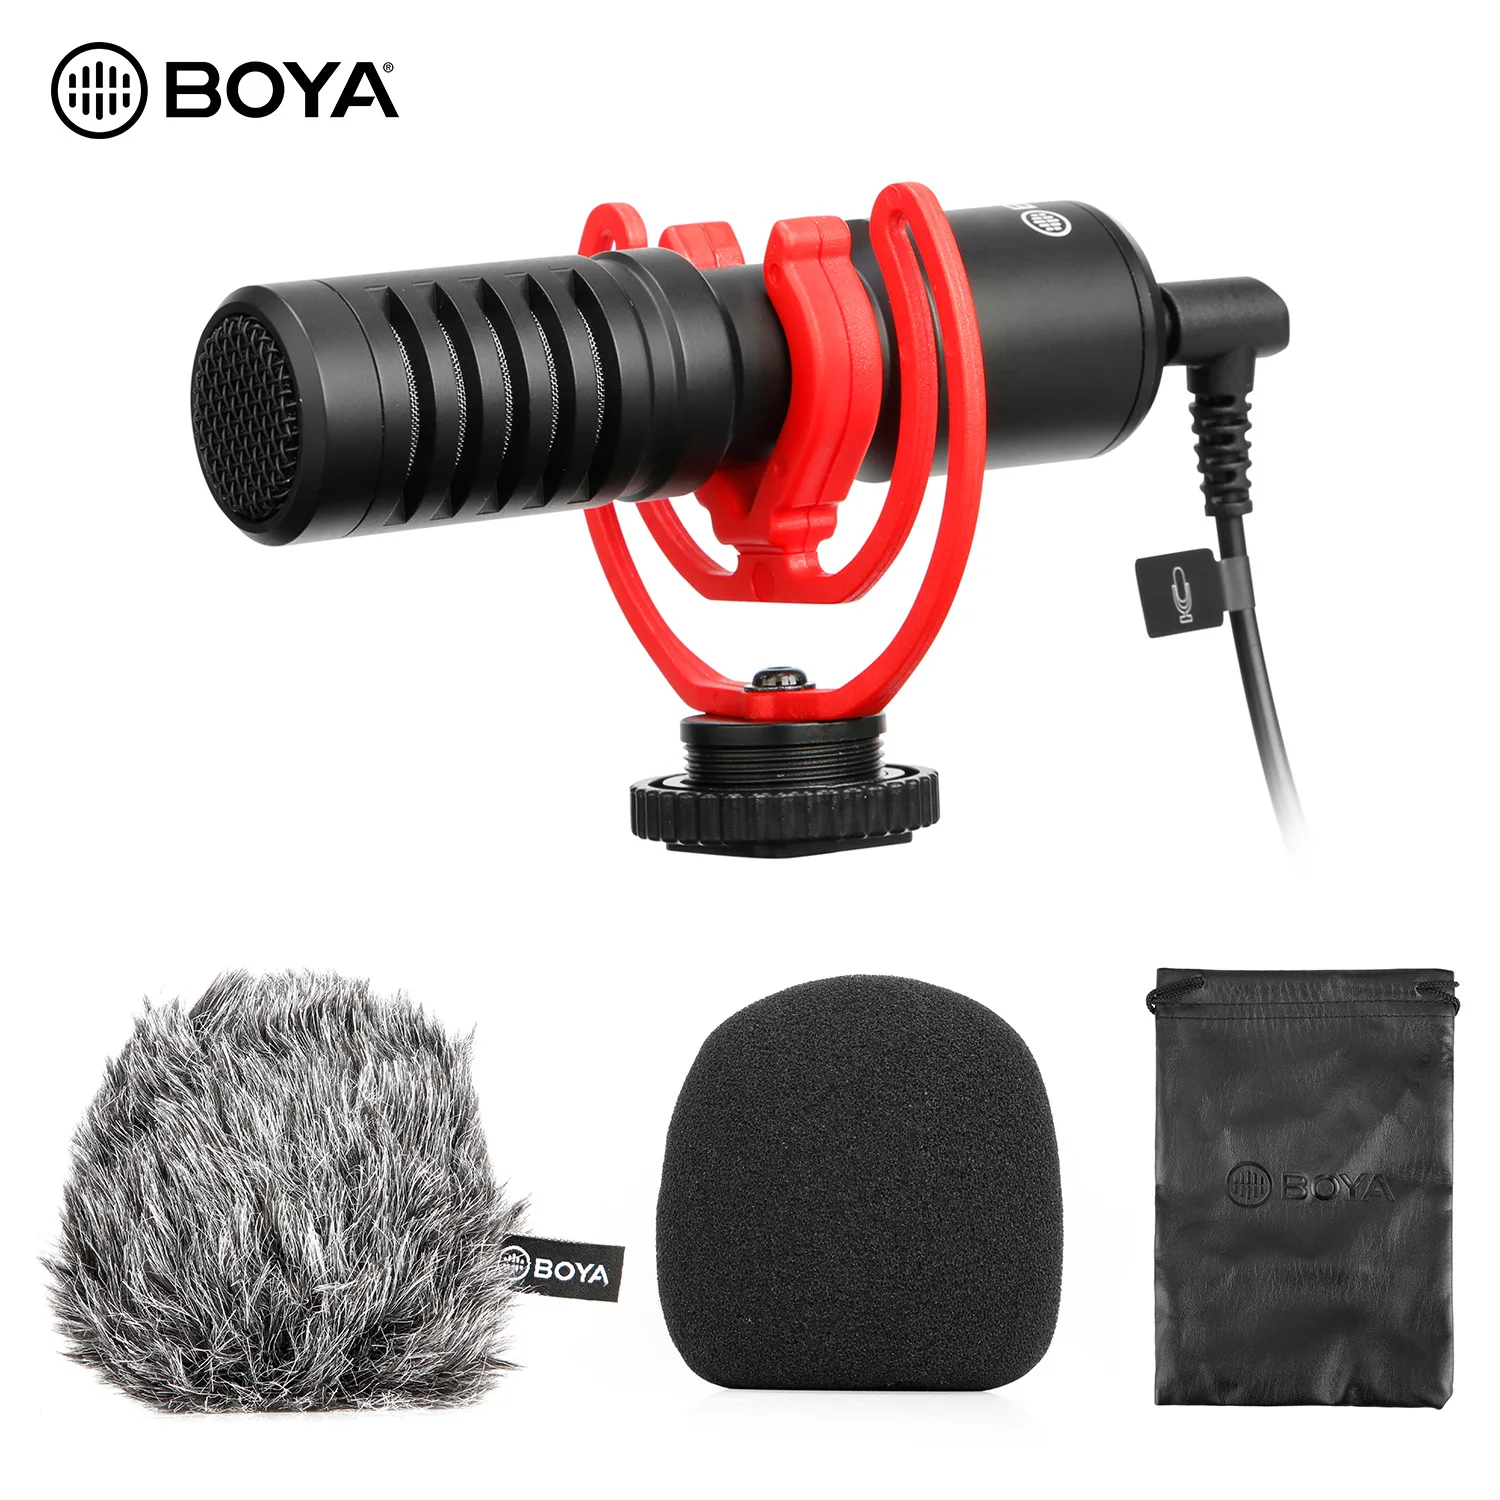 

BOYA BY-MM1 микрофон для камеры, микрофон, суперкардиоидный микрофон с рисунком, конденсаторные микрофоны для смартфона, DSLR, видео, аудио в реаль...